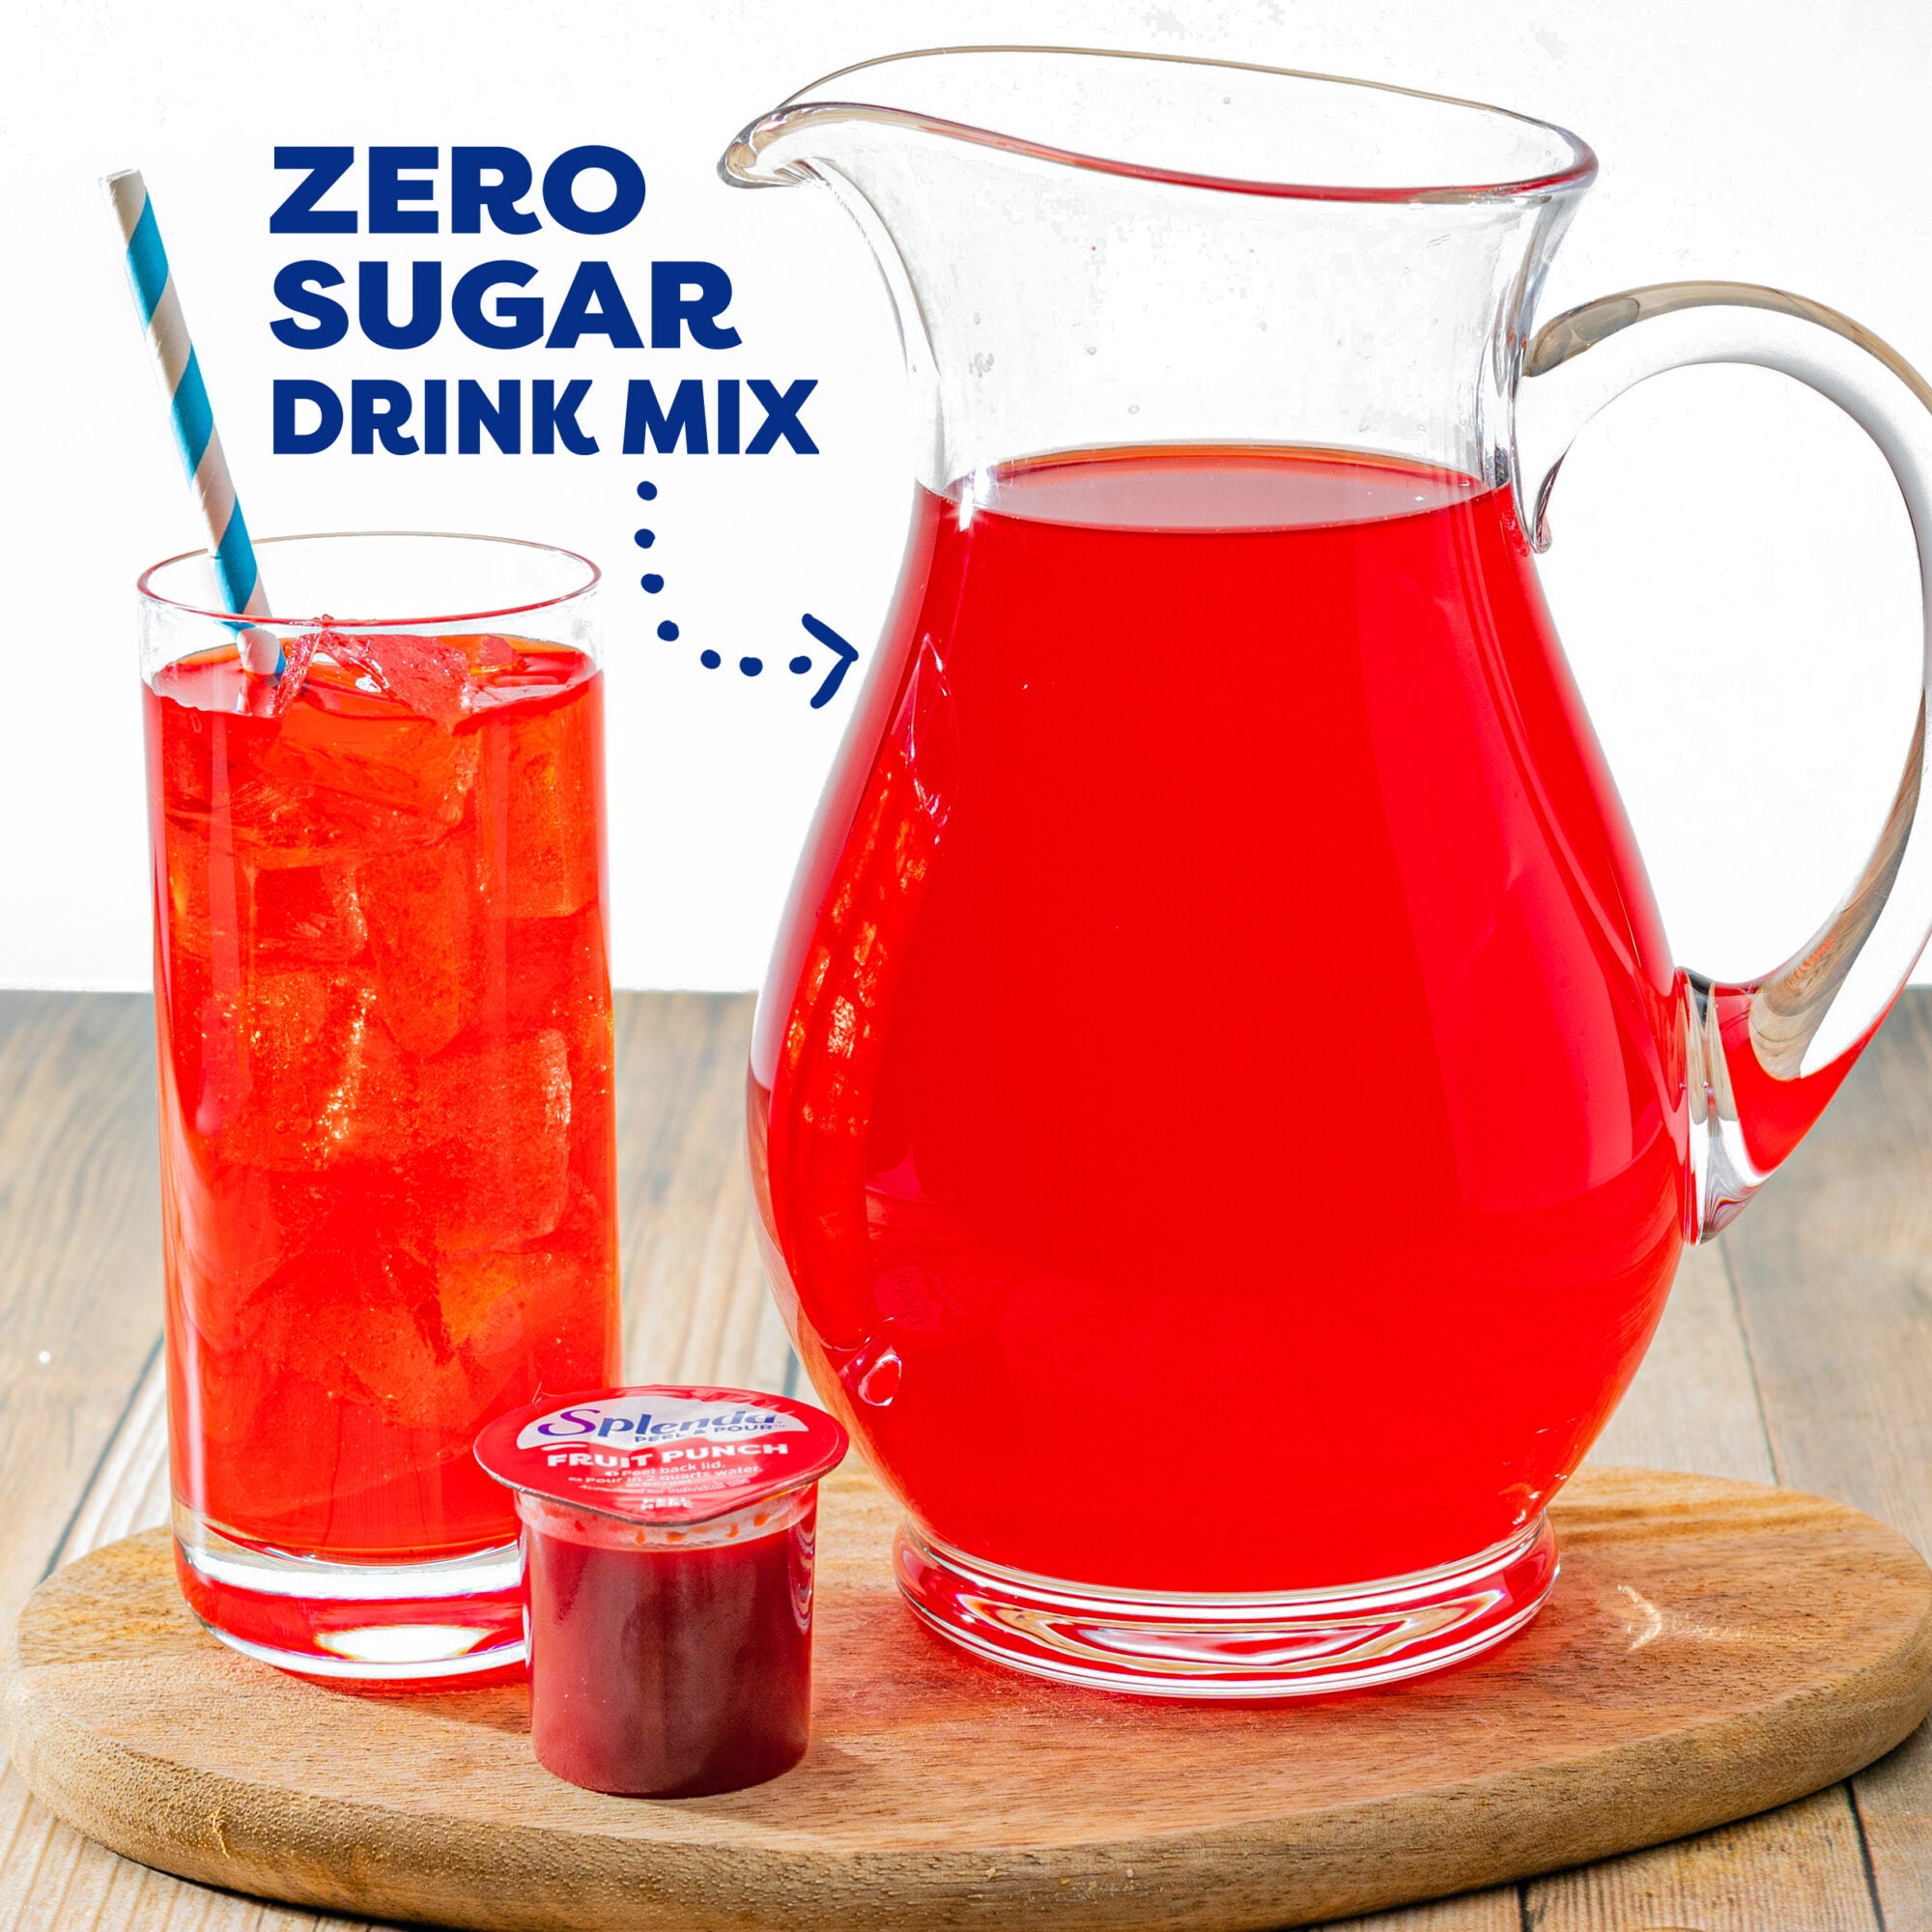 Splenda Peel & Pour Zero Calorie Drink Mix - Fruit Punch